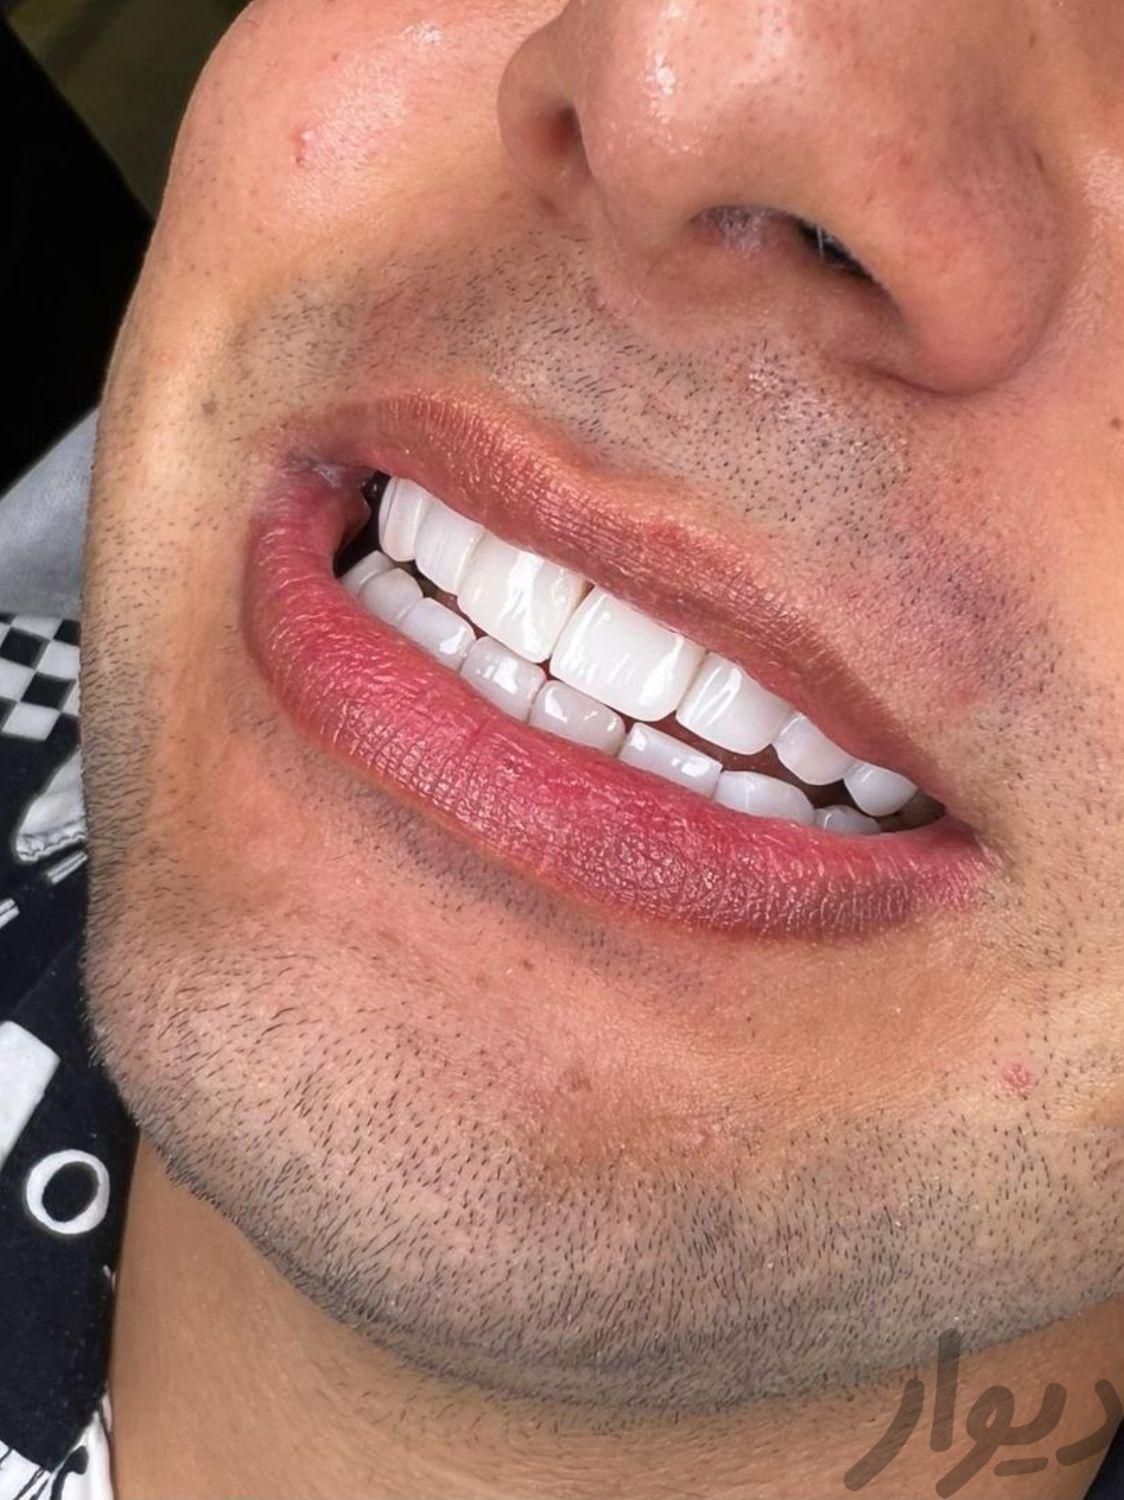 کامپوزیت دندان عصب کشی ایمپلنت دندانپزشکی پالیش|خدمات آرایشگری و زیبایی|تهران, میرداماد|دیوار